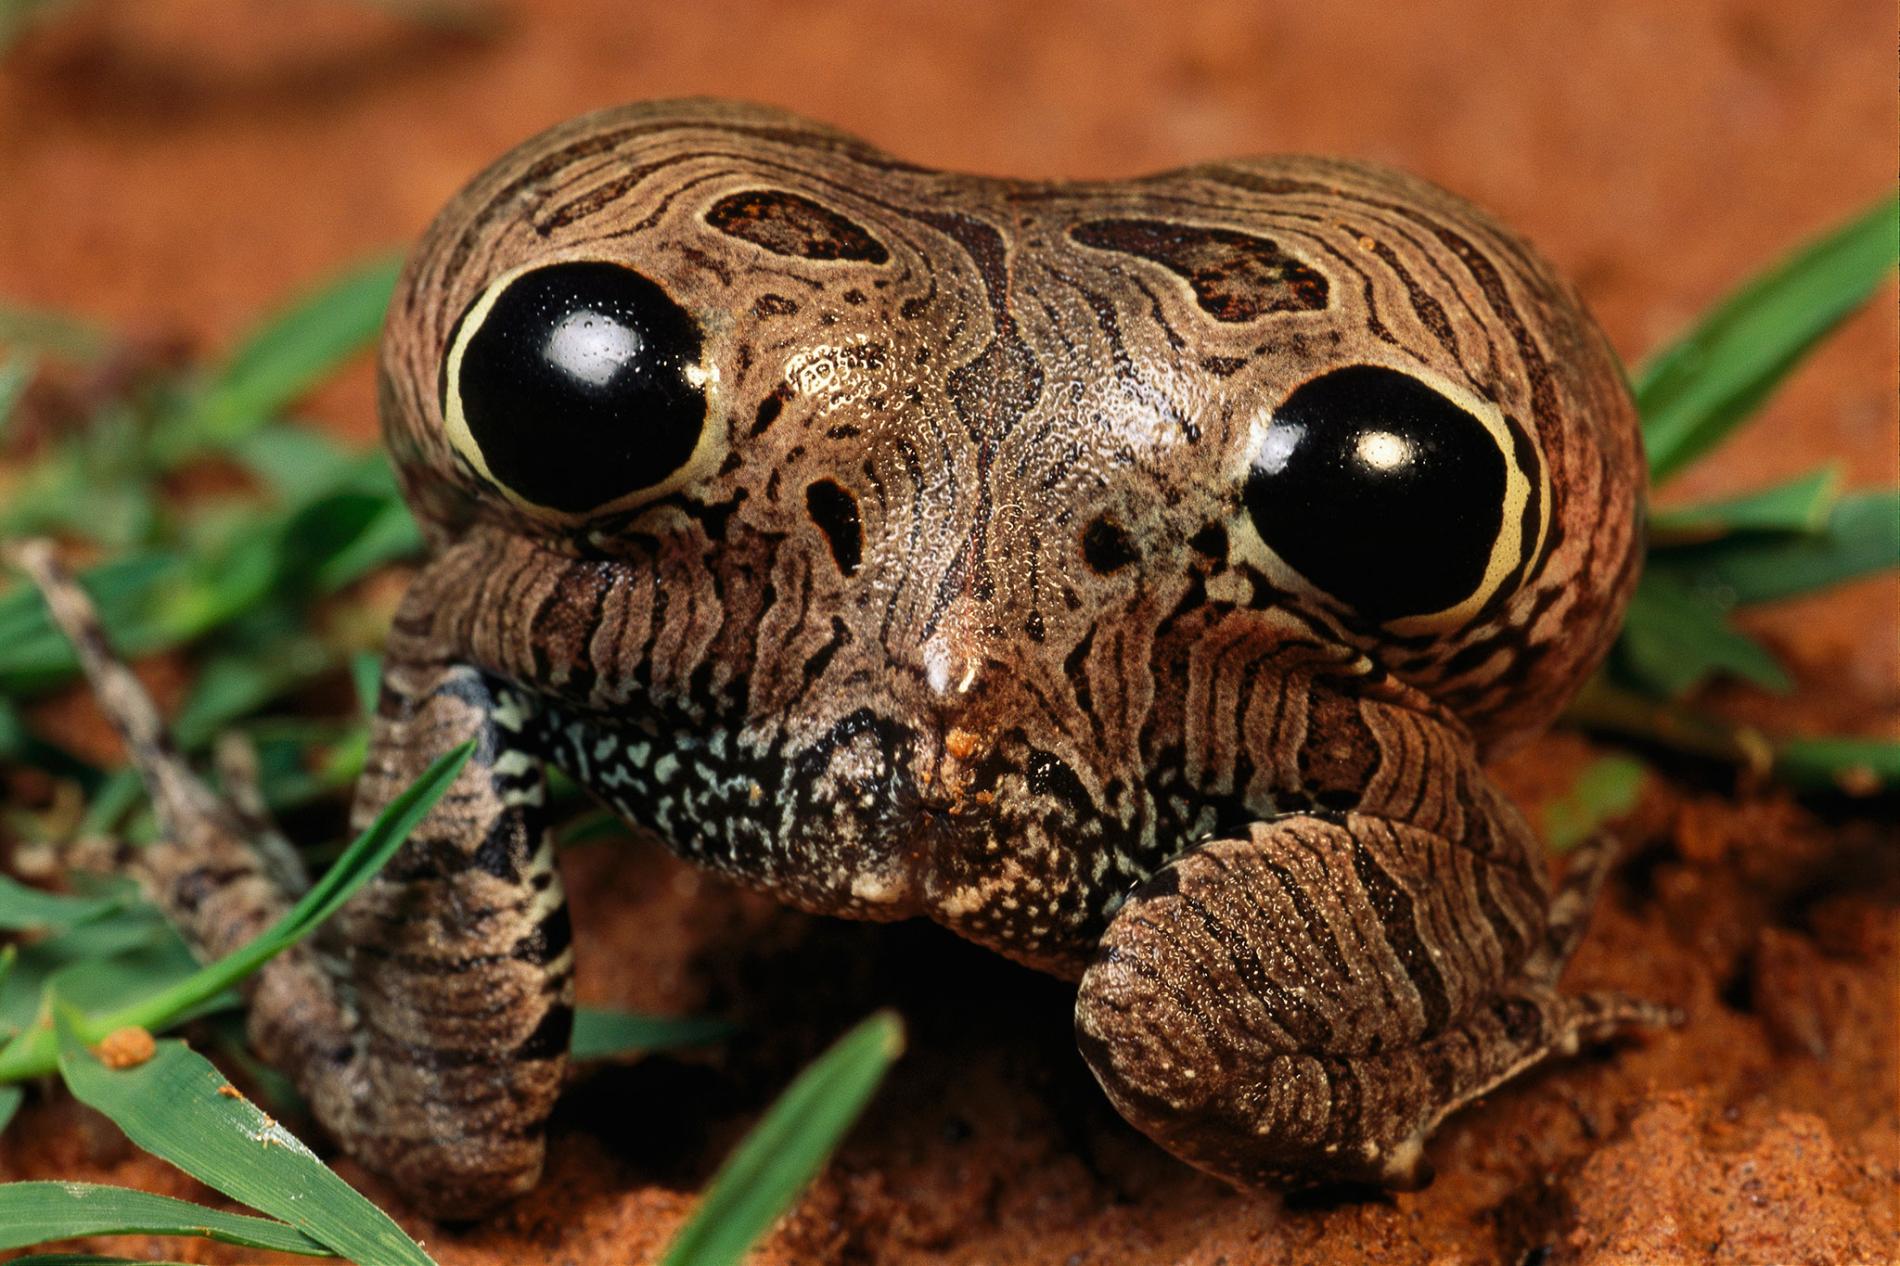 Les fesses à motifs d'yeux de la grenouille Physalaemus nattereri Via National Geographic photo par George Grall